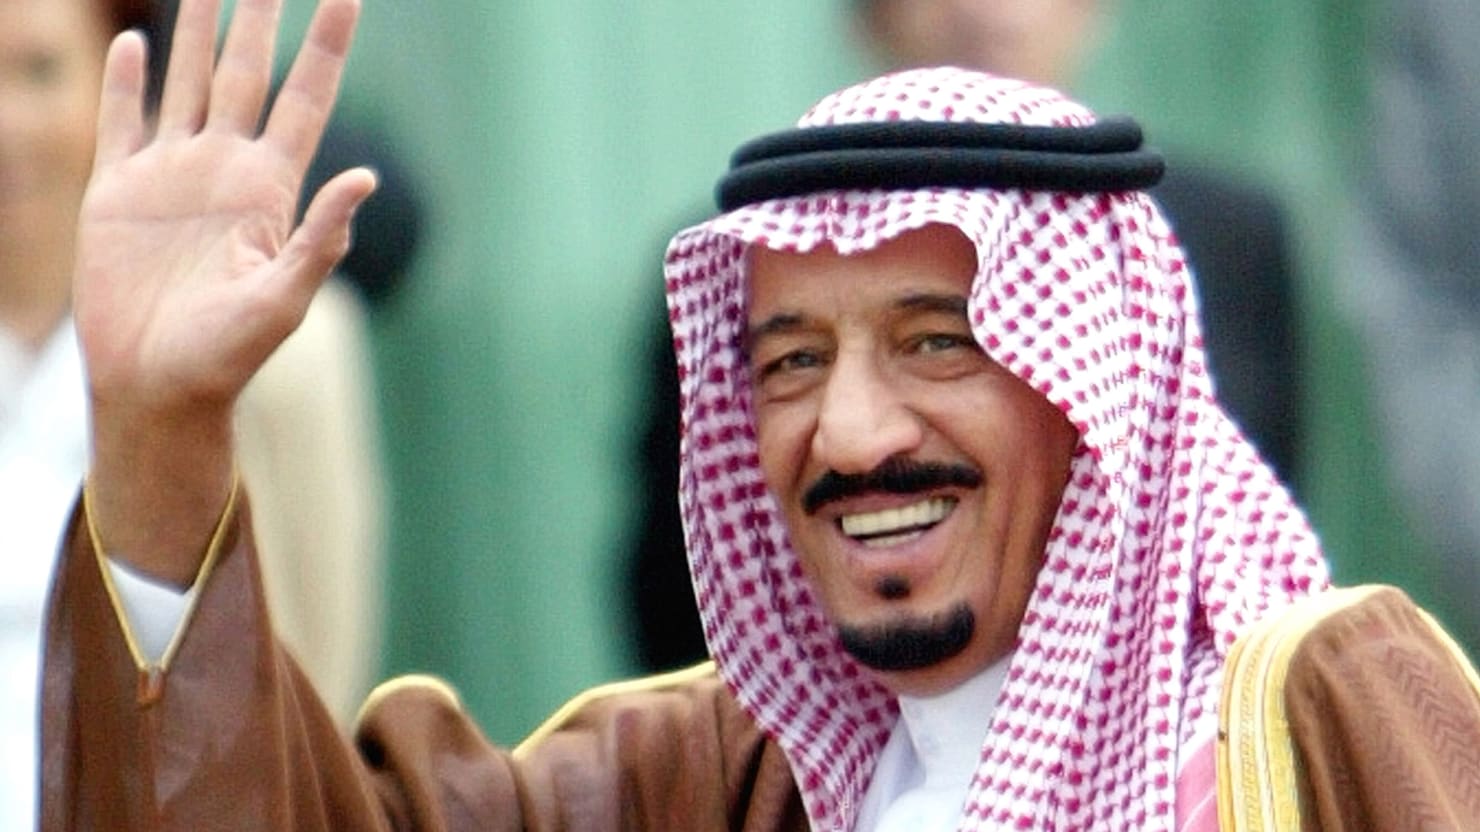 The Next King of the Saudis Salman, the Family Sheriff